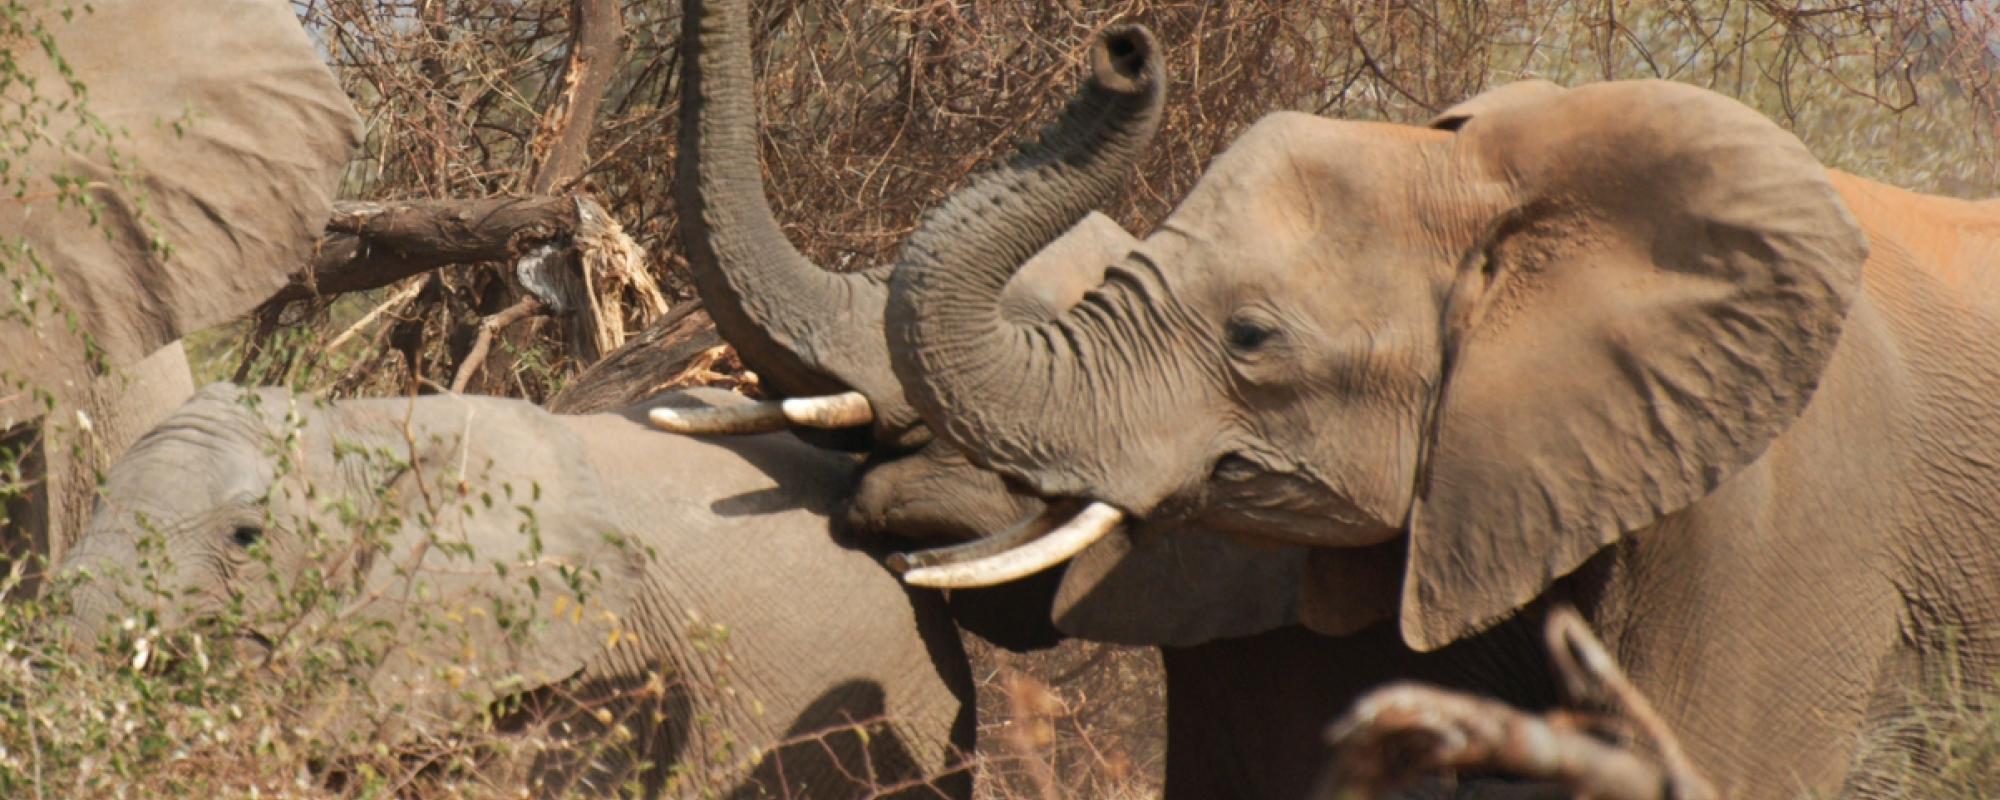 Elefanten in der Tuli Wilderness 